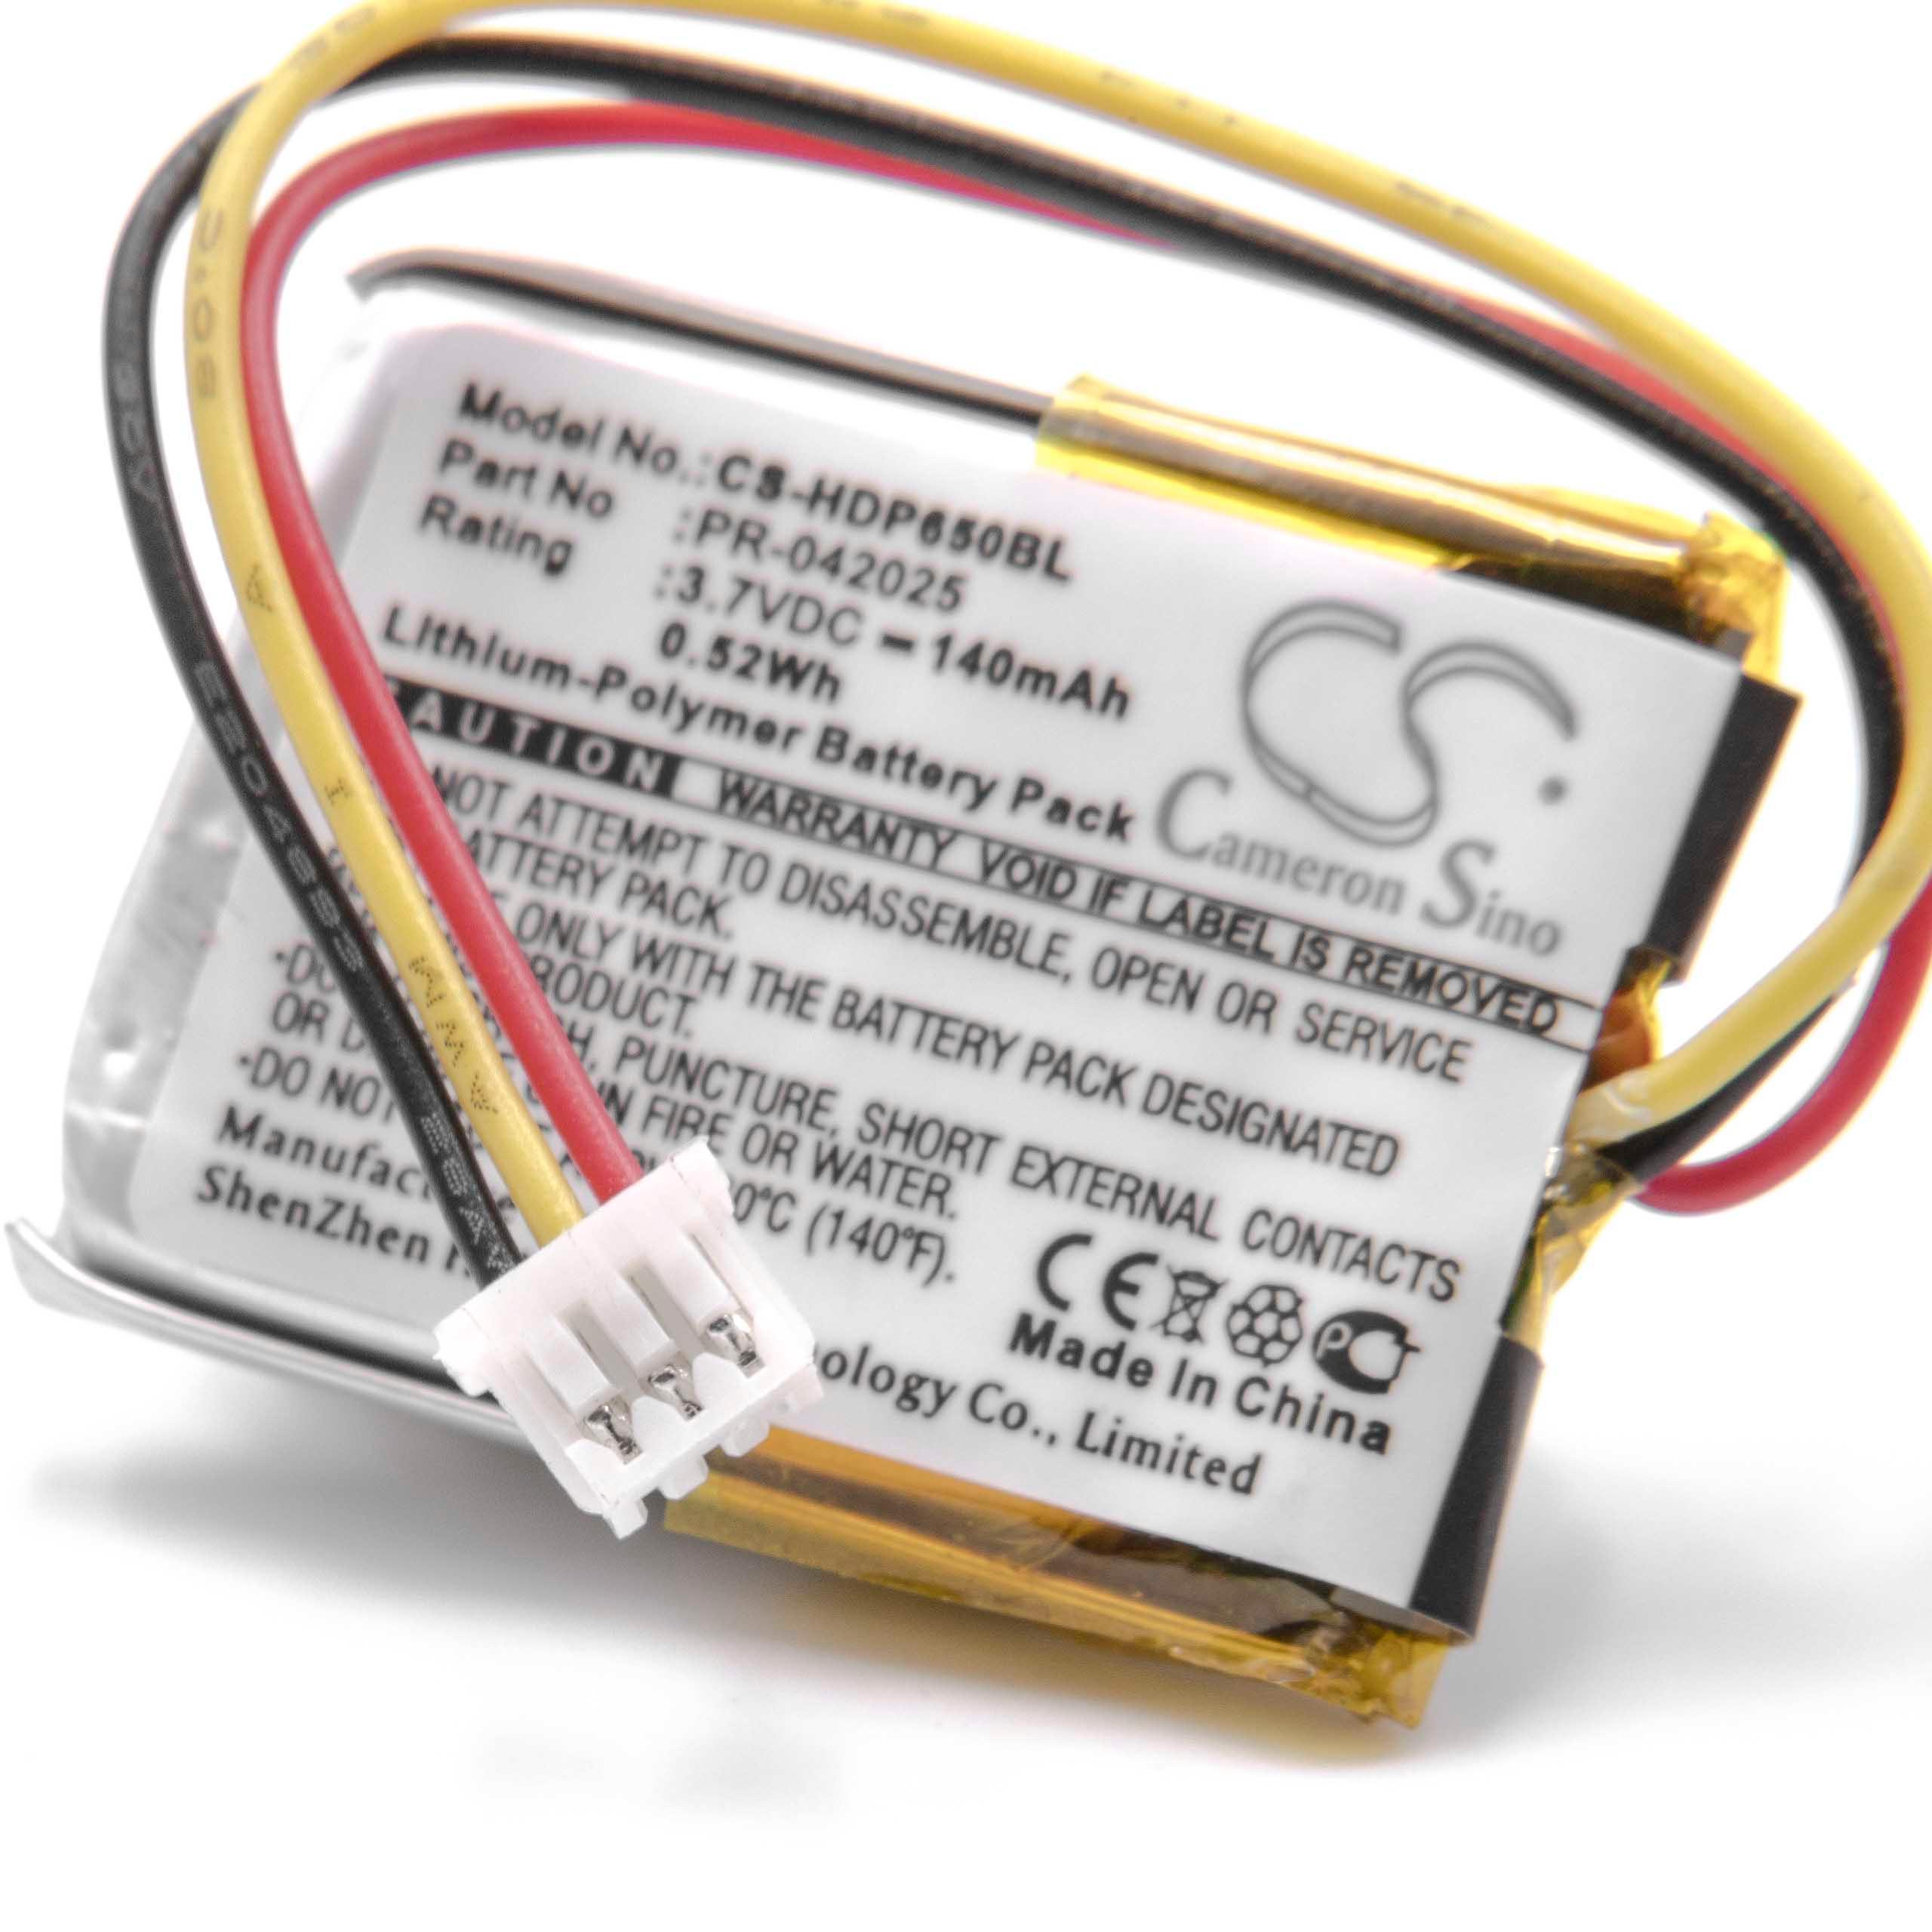 Batterie remplace Honeywell PR-042025 pour scanner de code-barre - 140mAh 3,7V Li-polymère